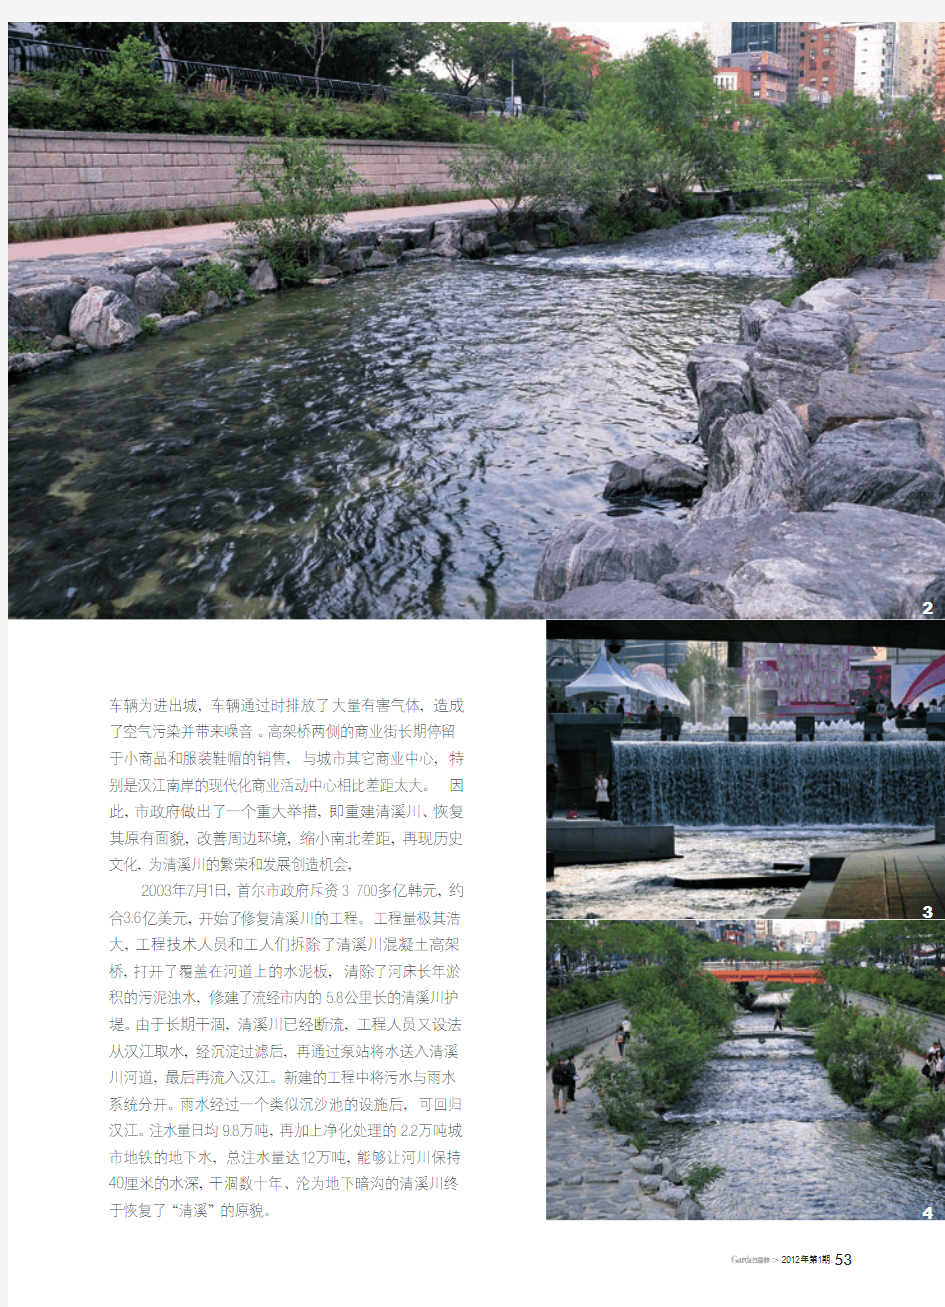 城市发展历史长河的美丽浪花_韩国首尔清溪川景观复原工程